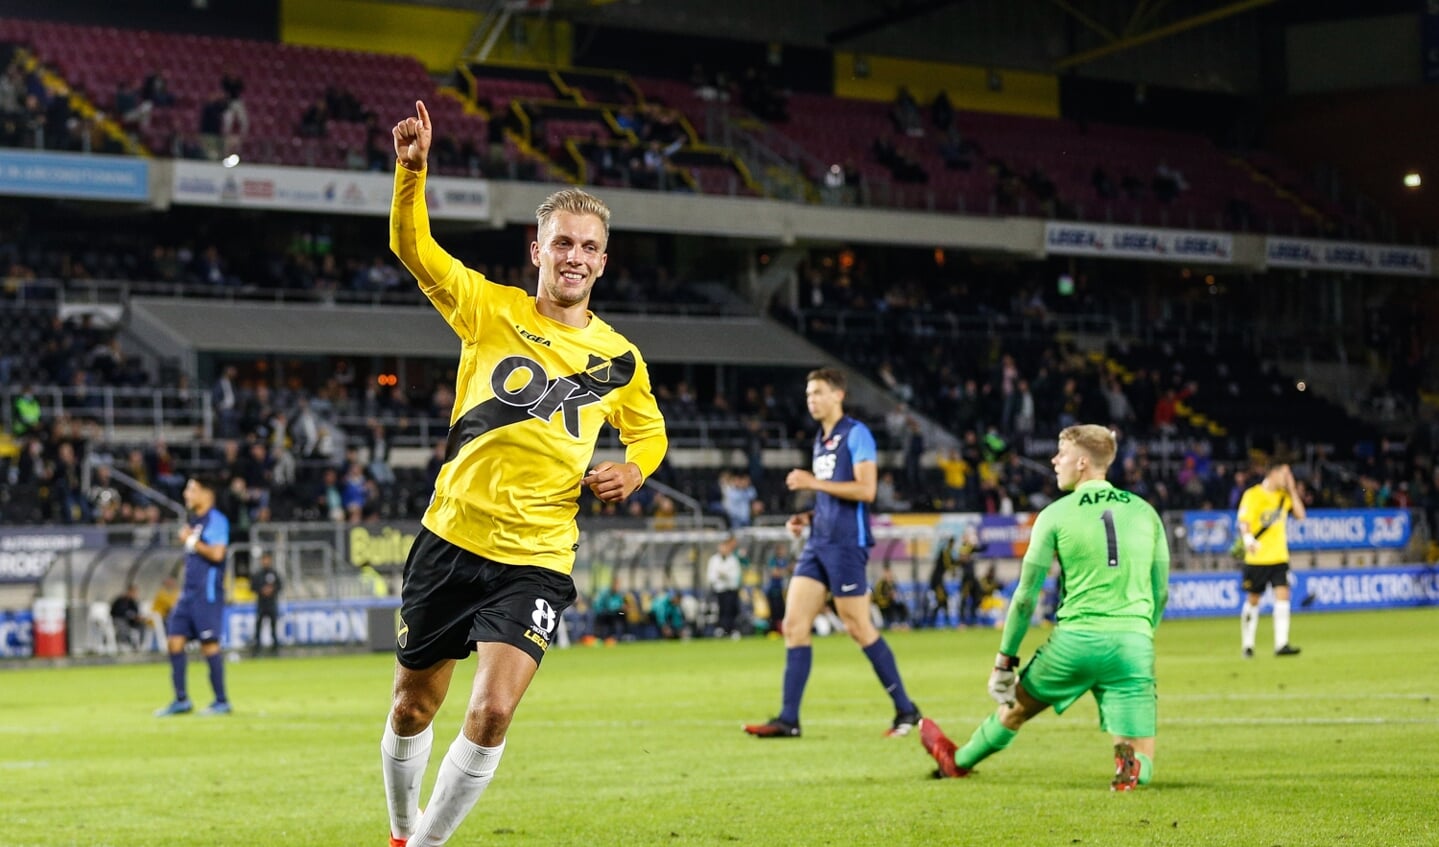 NAC wint met 6-1 van Jong AZ in Rat Verlegh Stadion